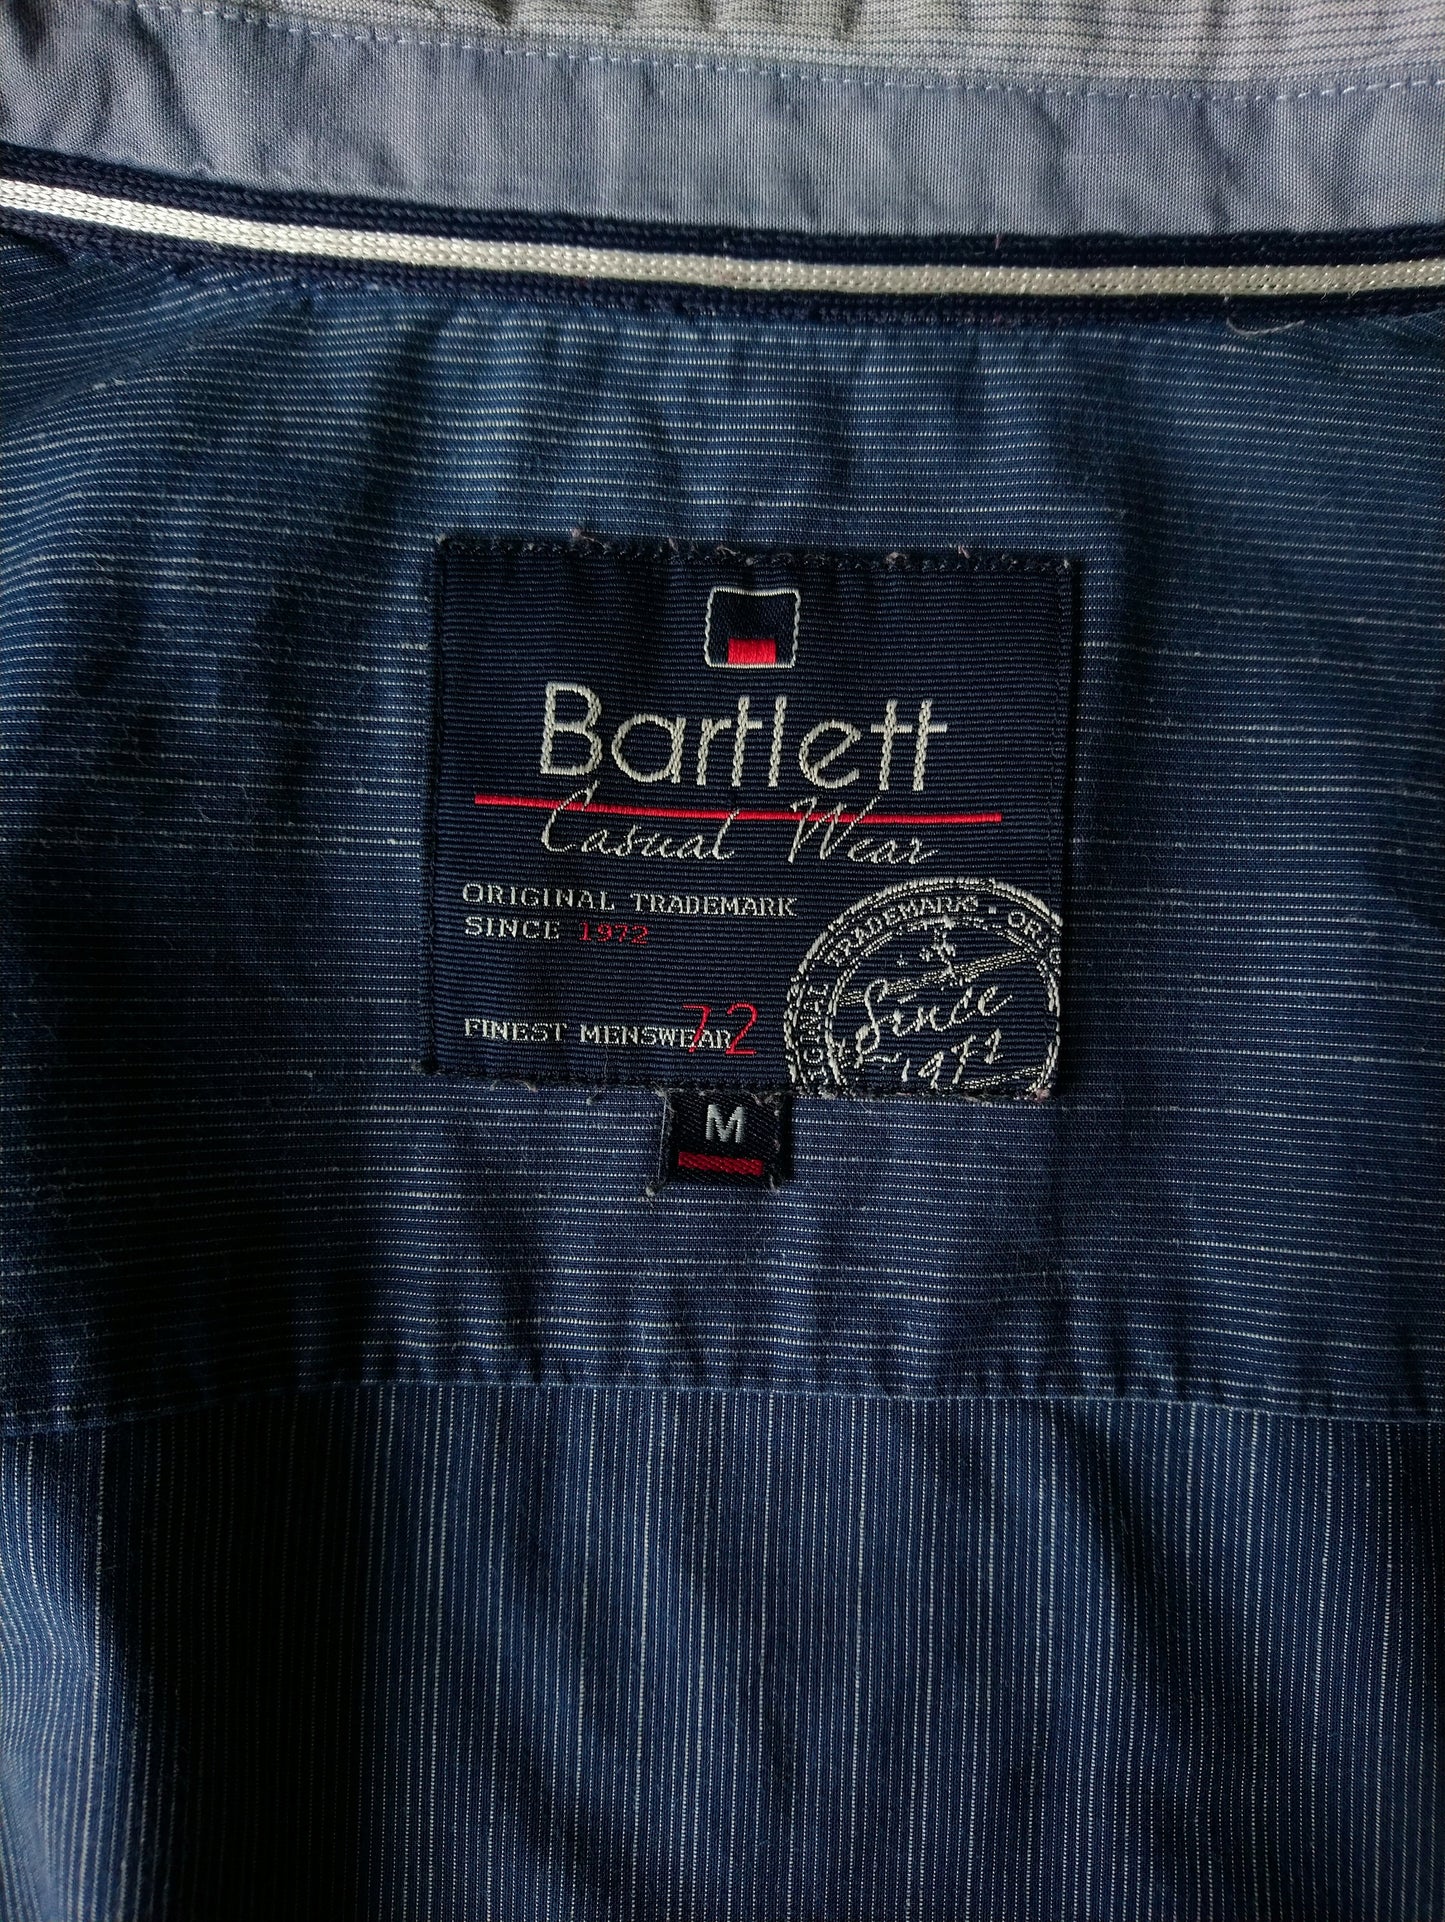 Bartlett shirt. Blue striped. Size M.